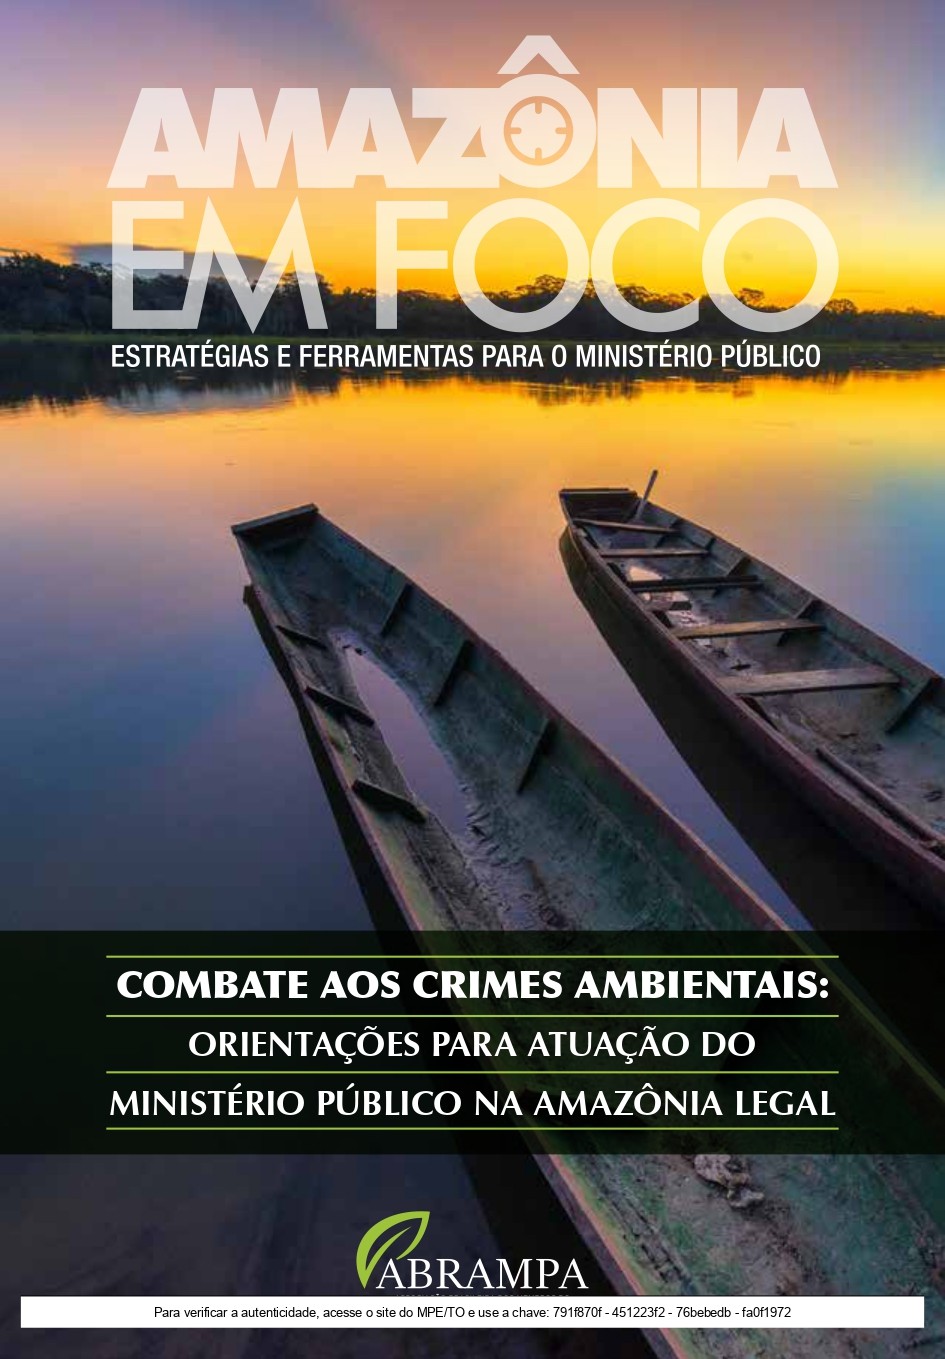 8 - Combate aos Crimes Ambientais: Orientações para Atuação do Ministério Público (MP) na Amazônia Legal